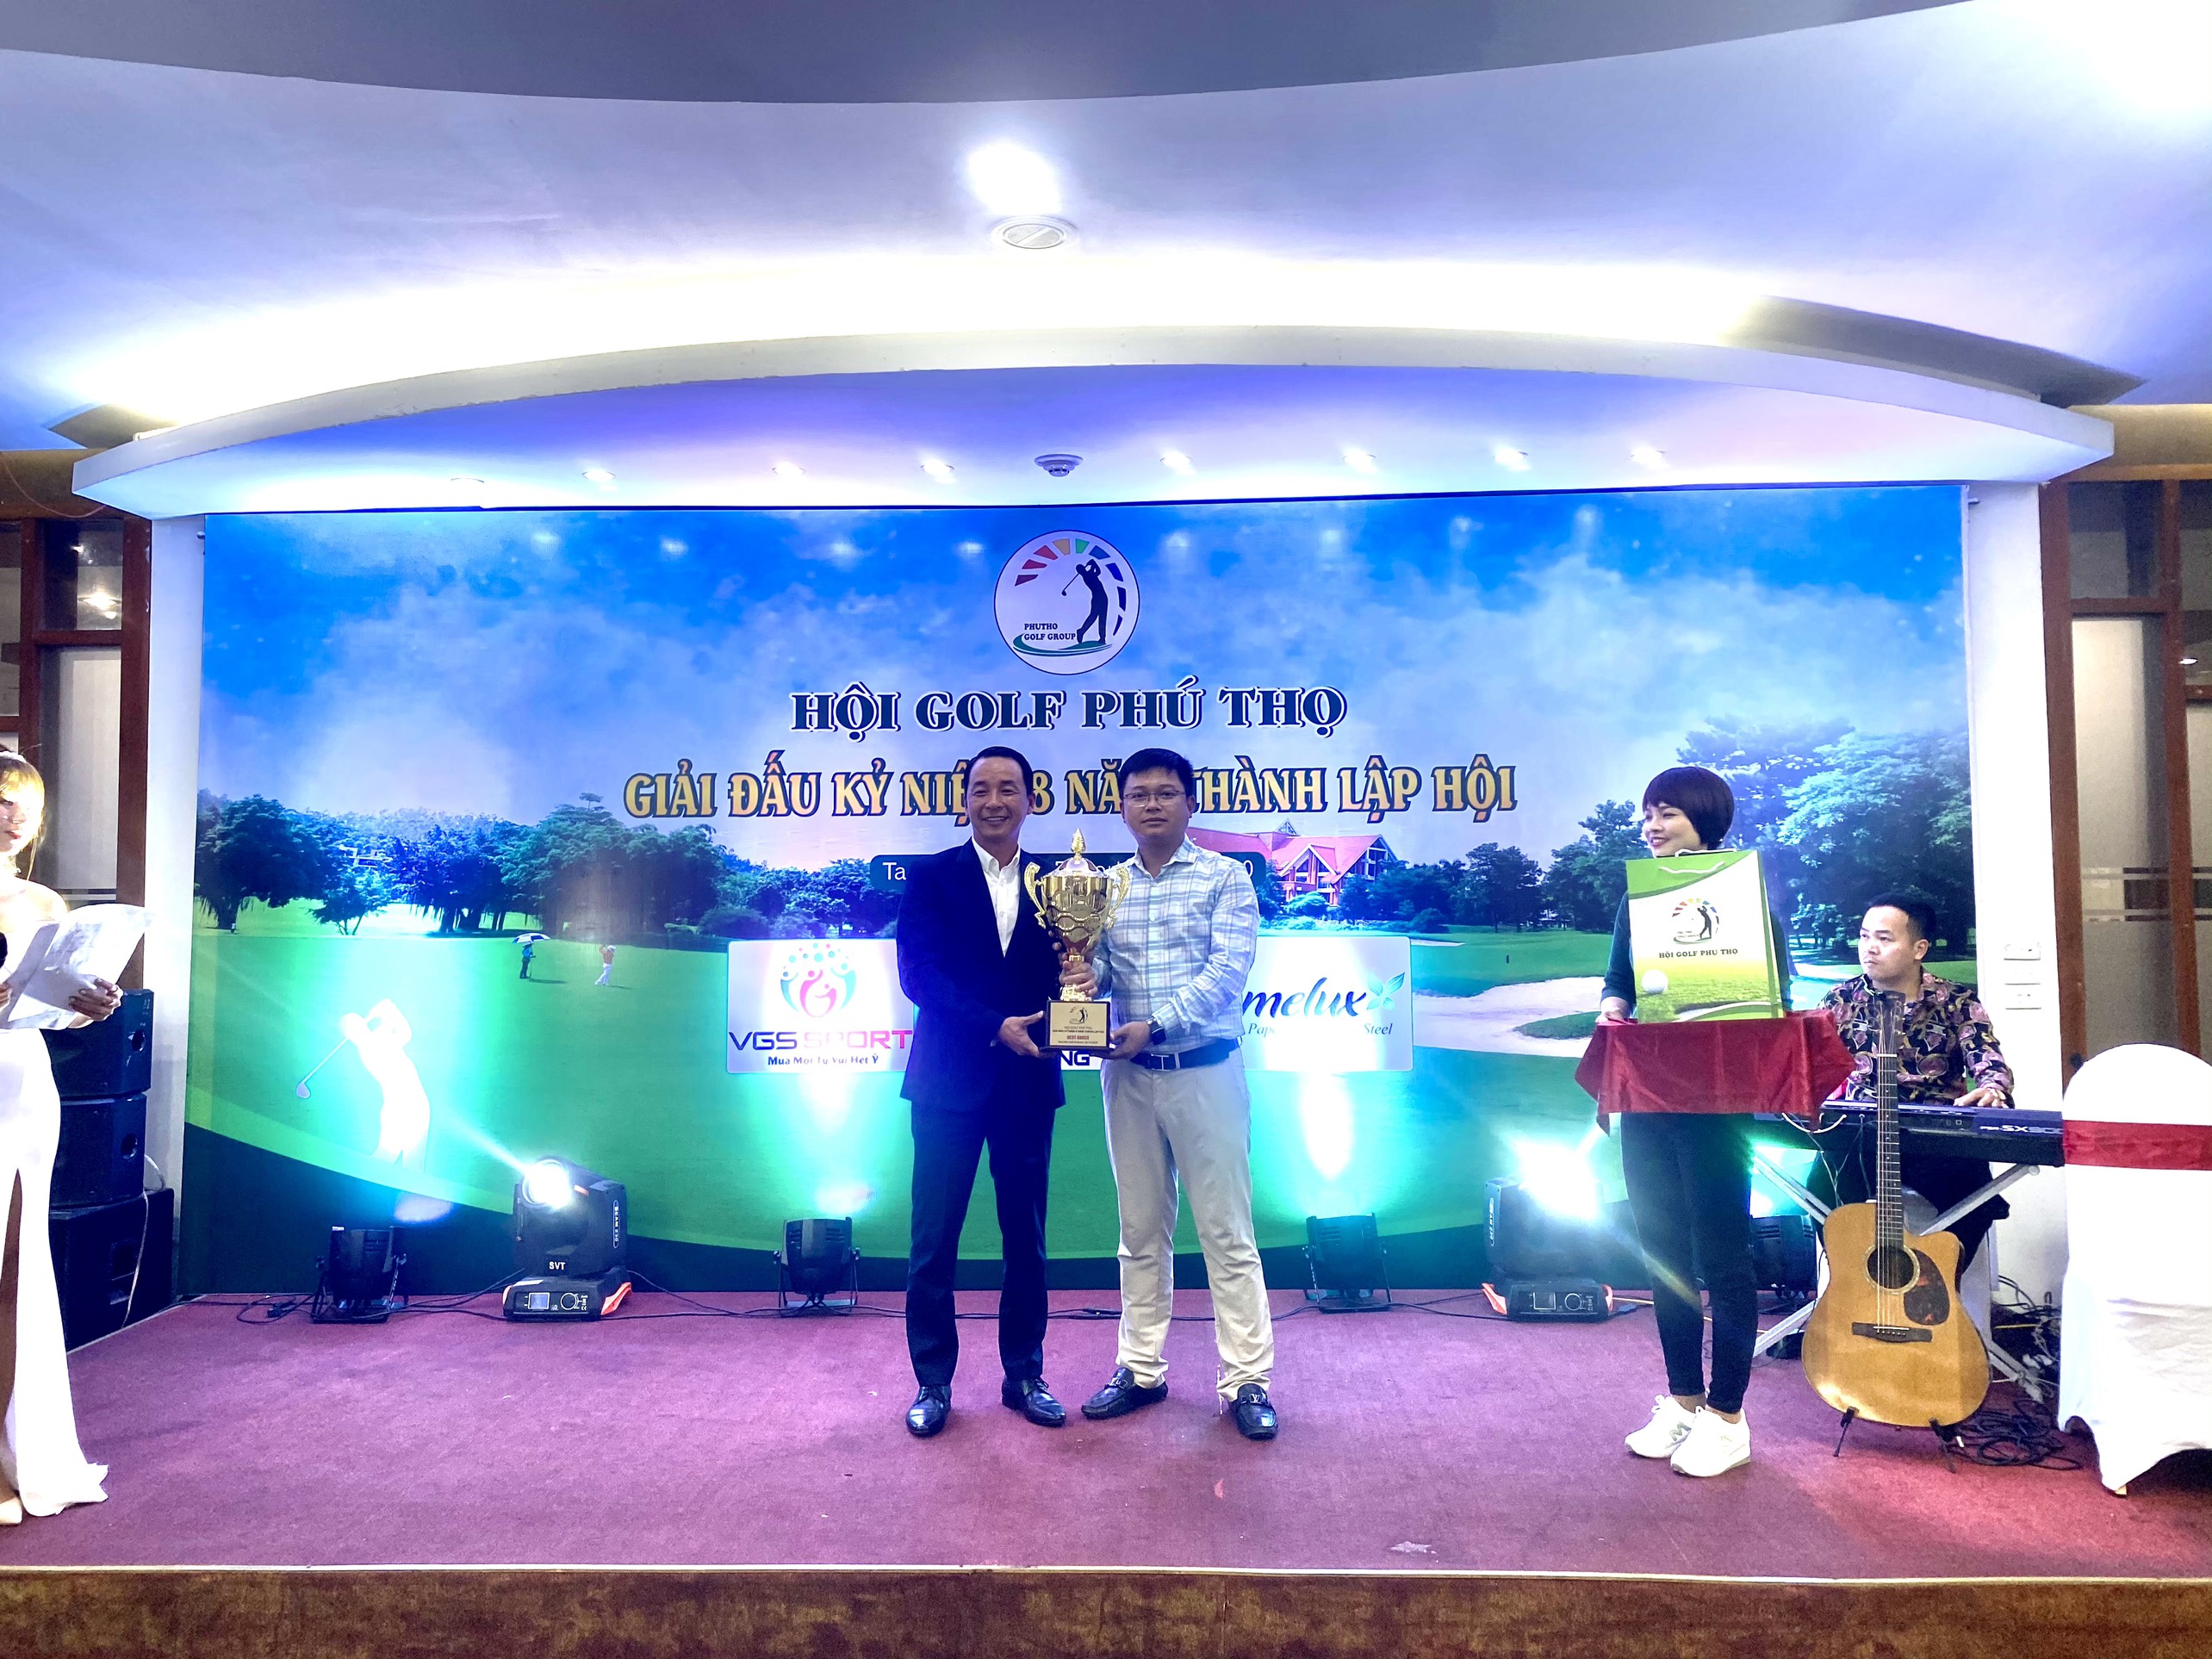 Golfer Nguyễn Trung Đức vô địch giải golf Kỷ niệm 8 năm thành lập Hội golf Phú Thọ